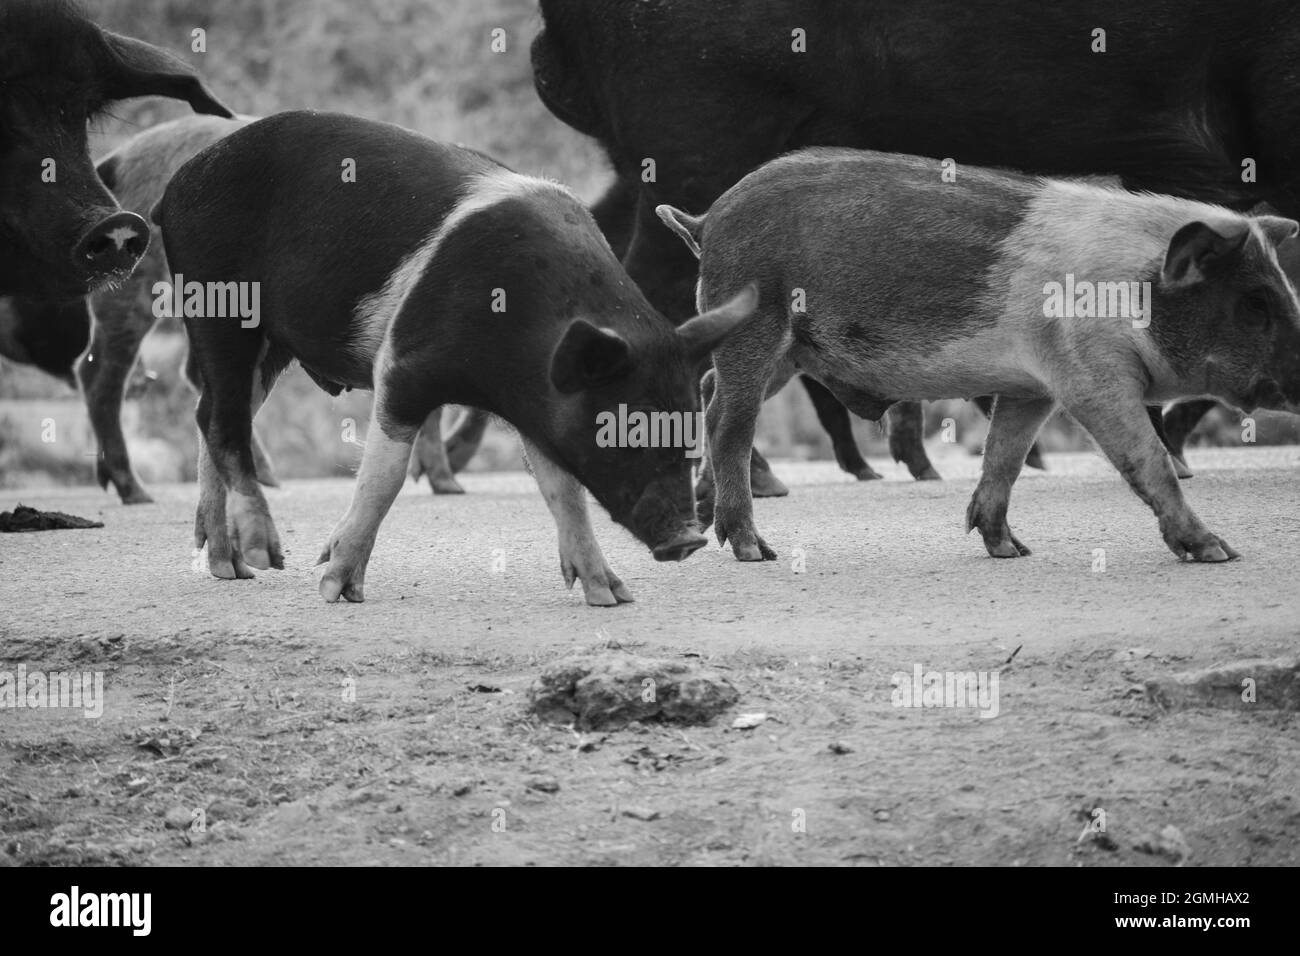 Pigs Stock Photo